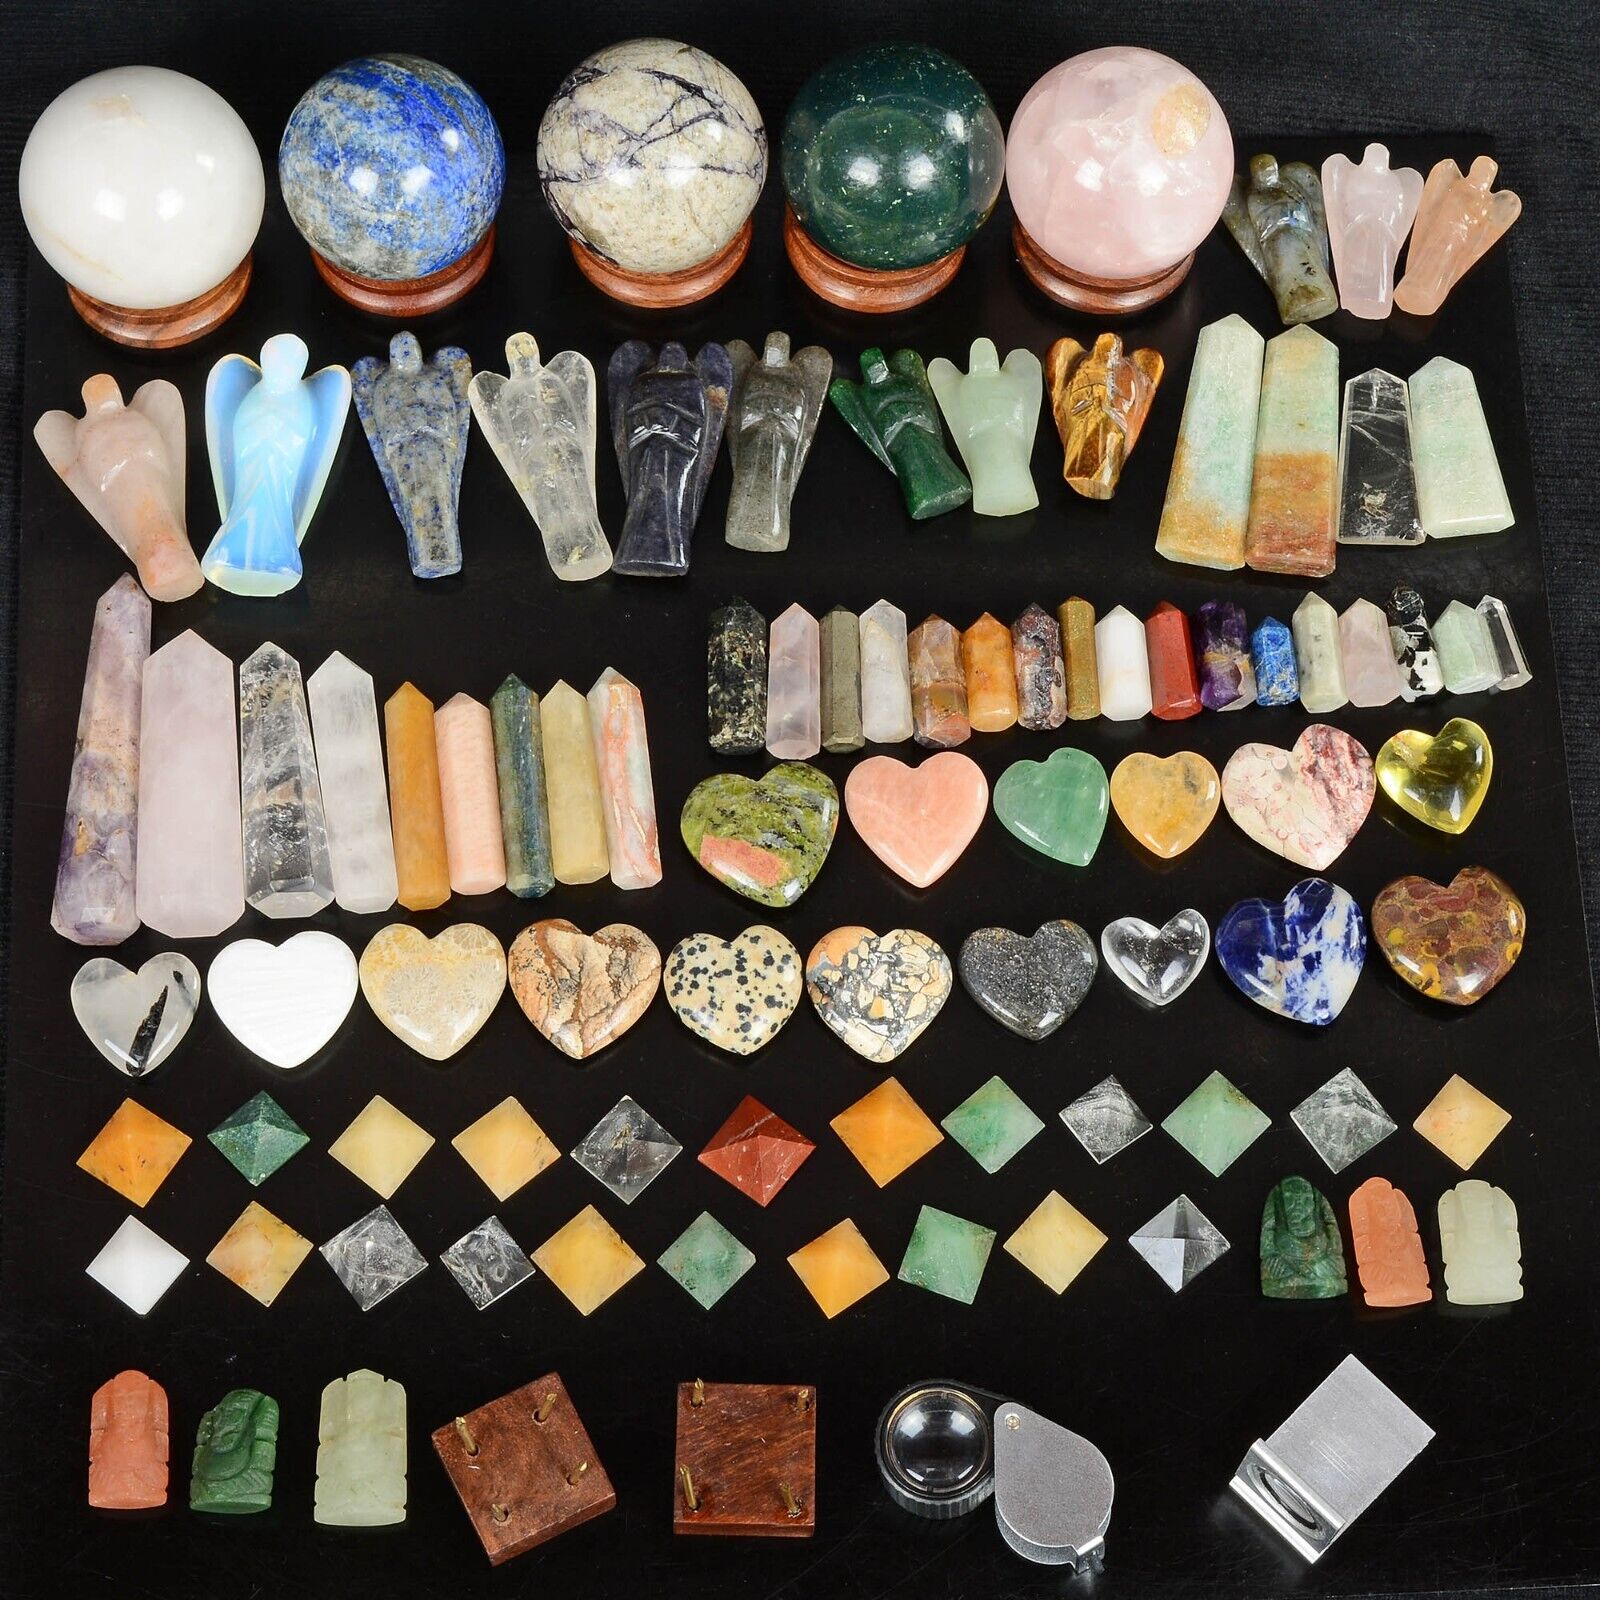 100+ Pcs Natural Crystal Reiki/Healing Genuine Gemstones Mineral Specimen Kit